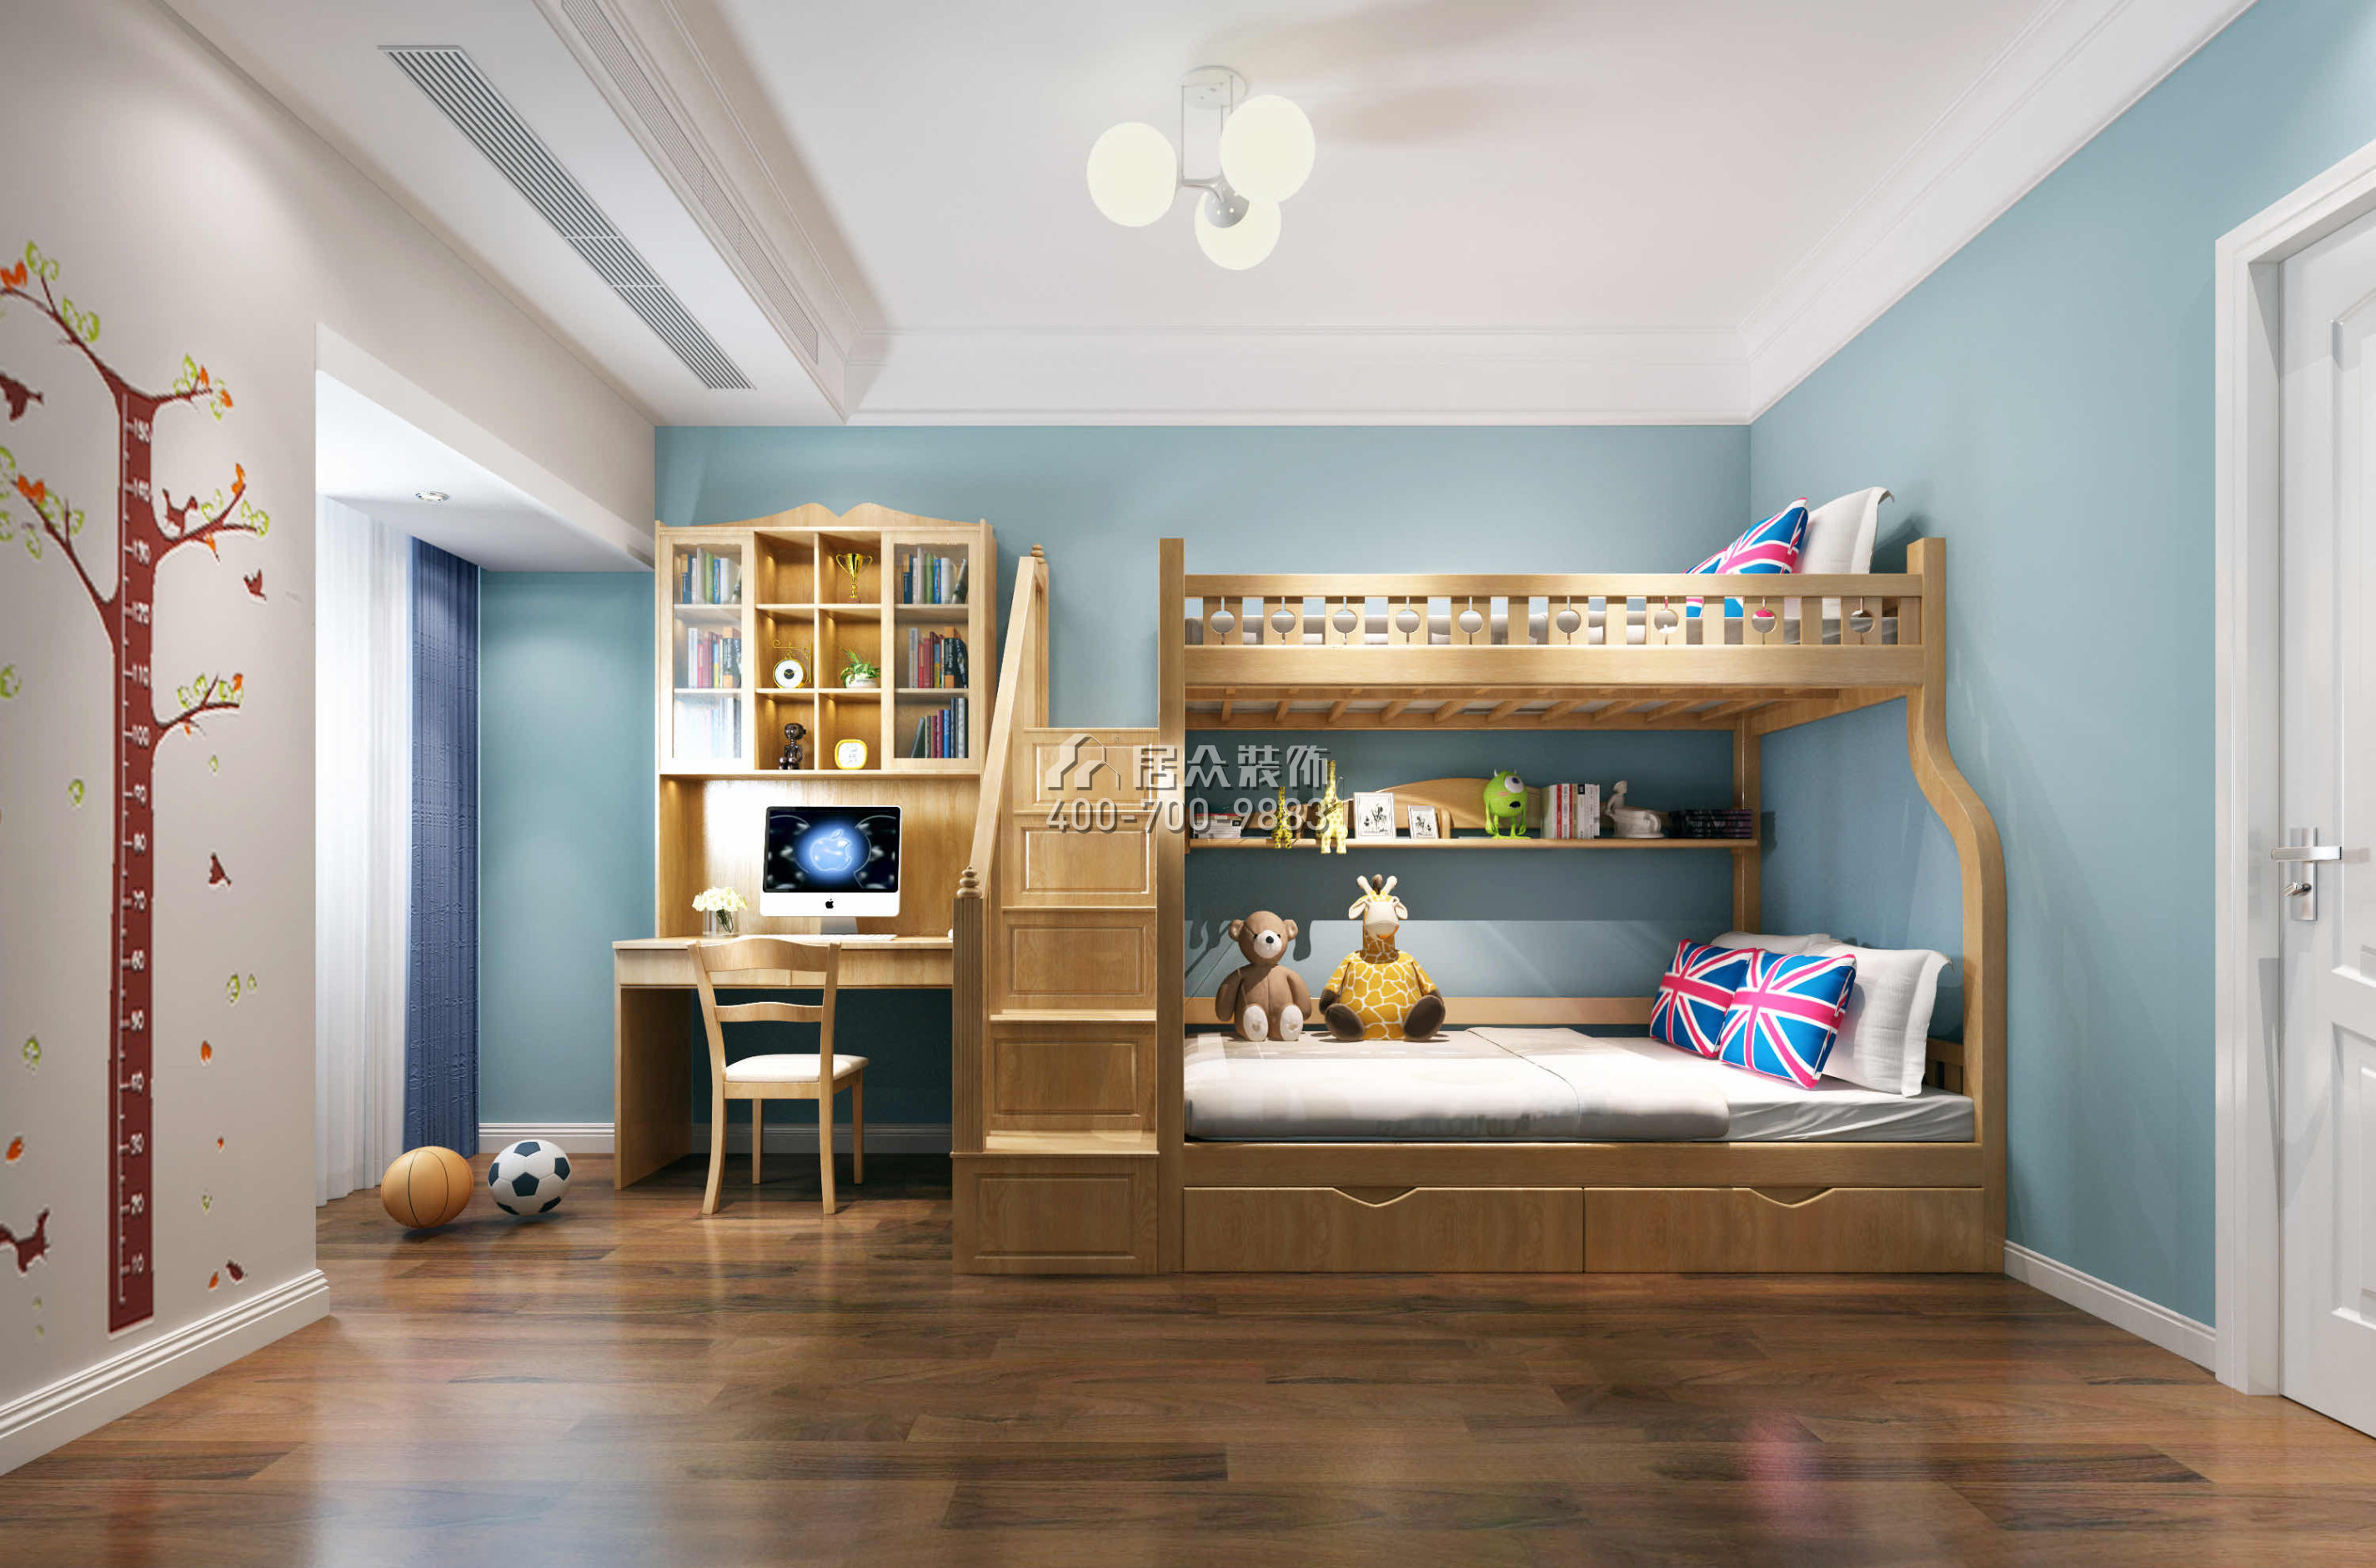 勤誠達132平方米歐式風格平層戶型兒童房裝修效果圖